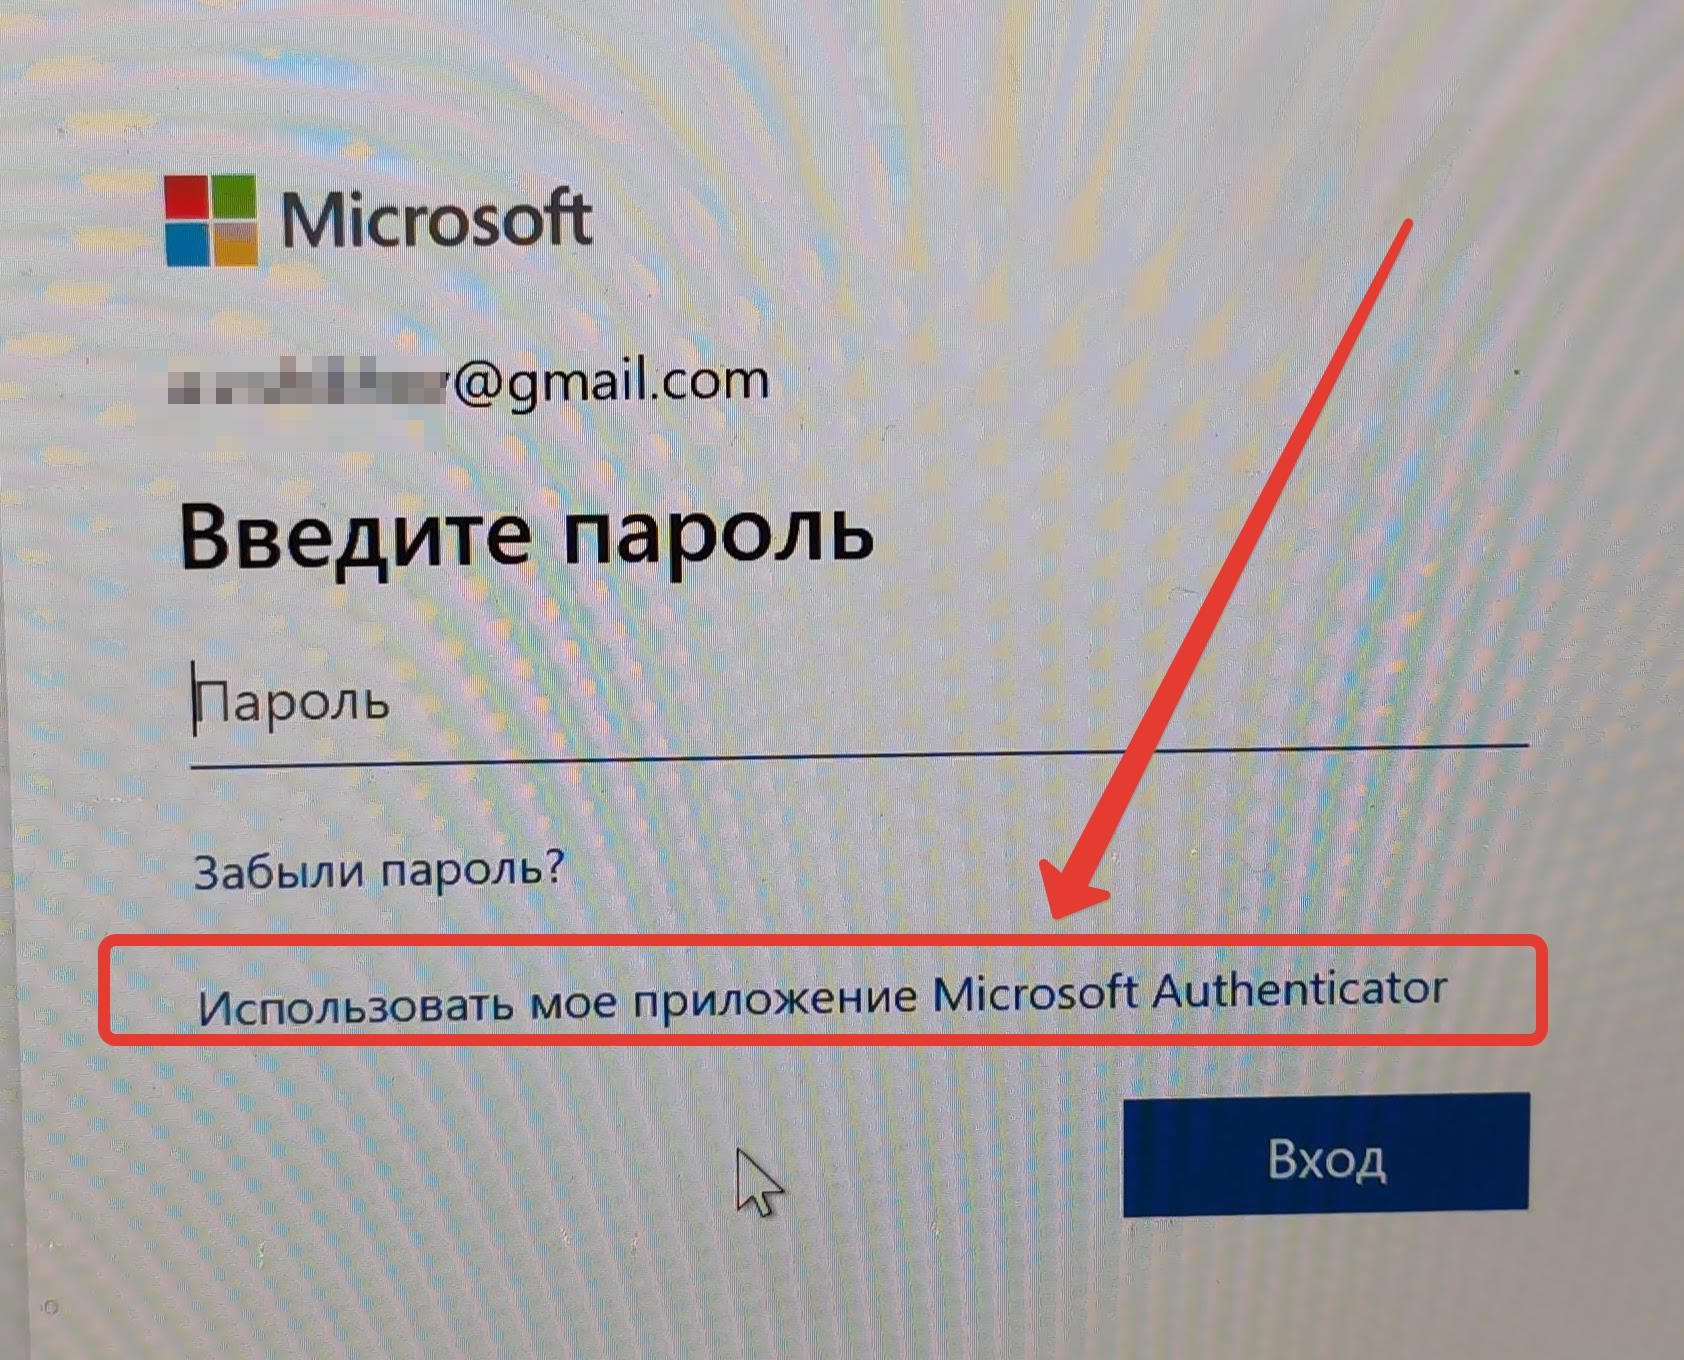 Как зайти в Windows 10 без пароля и пин-кода с помощью телефона Microsoft, можно, нужно, этого, Google, авторизацию, авторизации, приложение, Authenticator, заходить, телефон, После, Windows, ввести, нажимаем, которое, помощью, ввода, нажать, кнопку